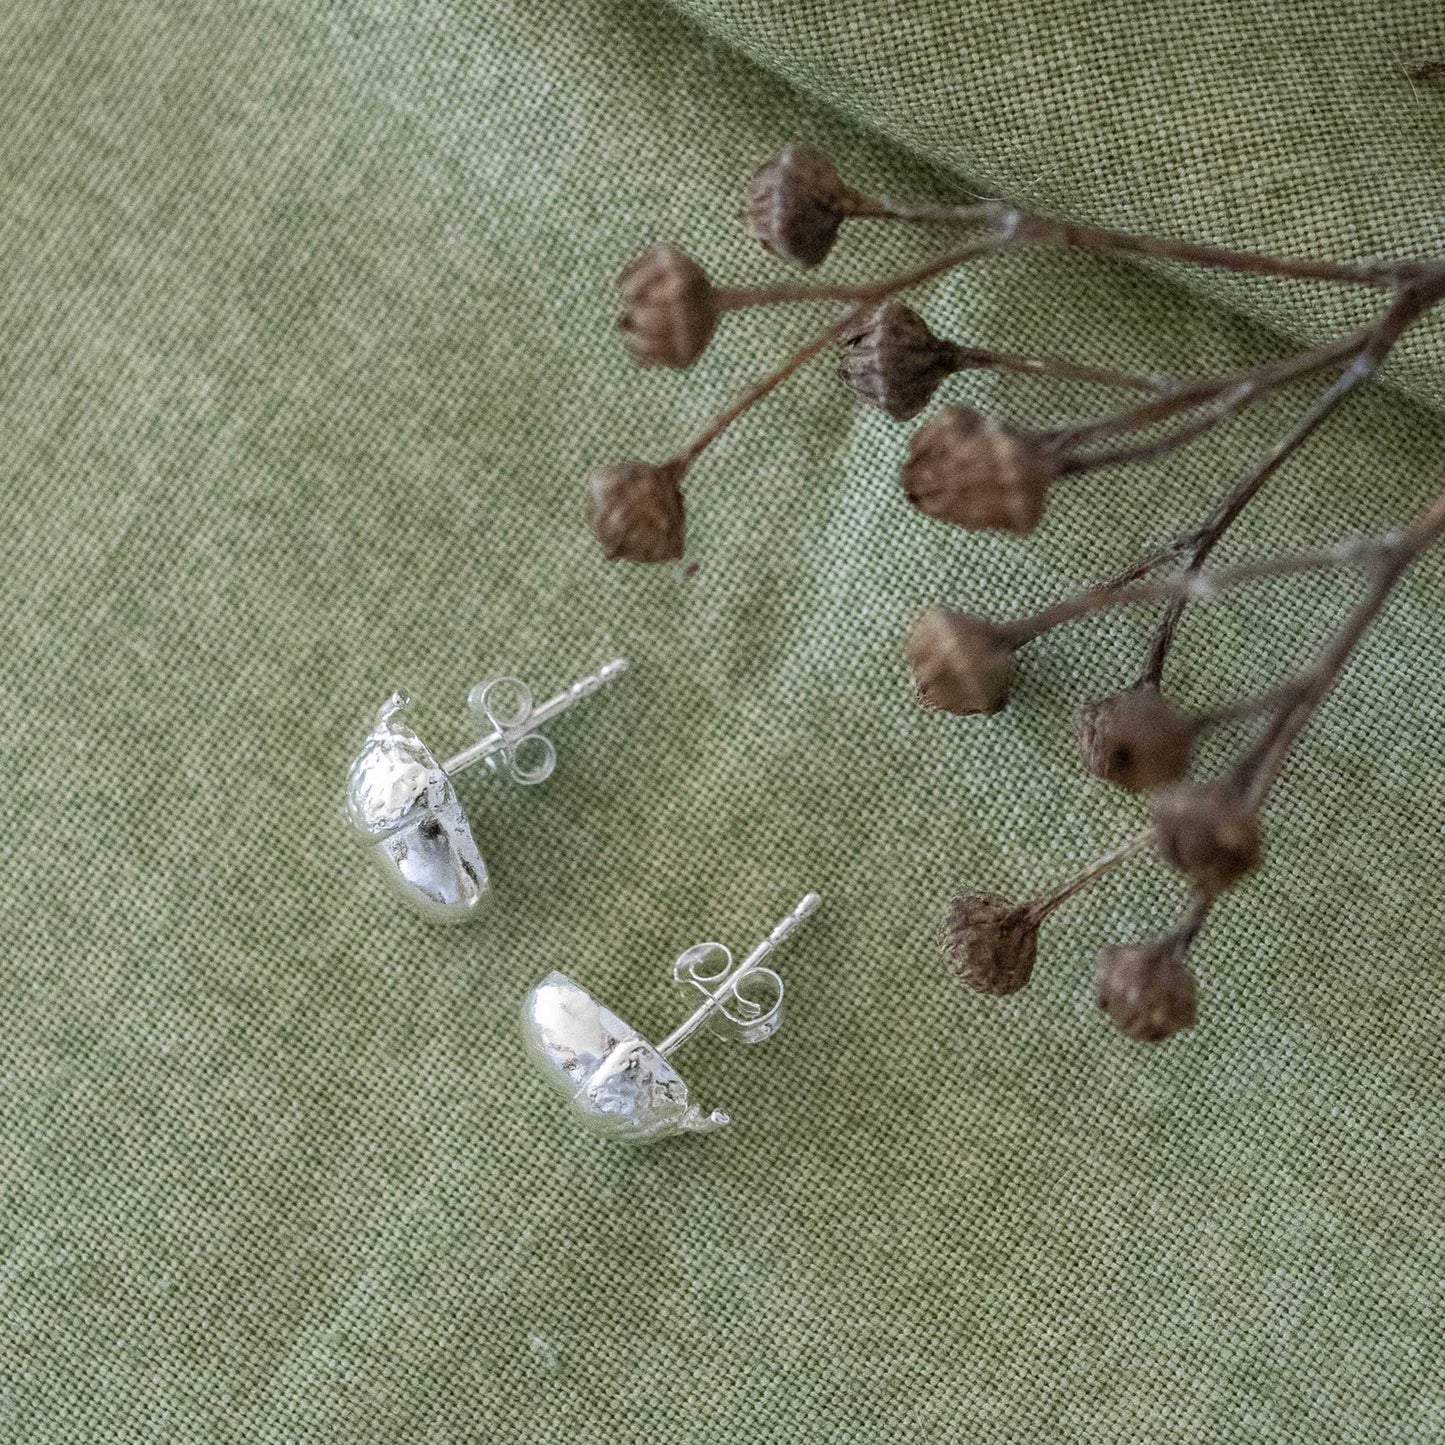 Acorn stud earrings in sterling silver